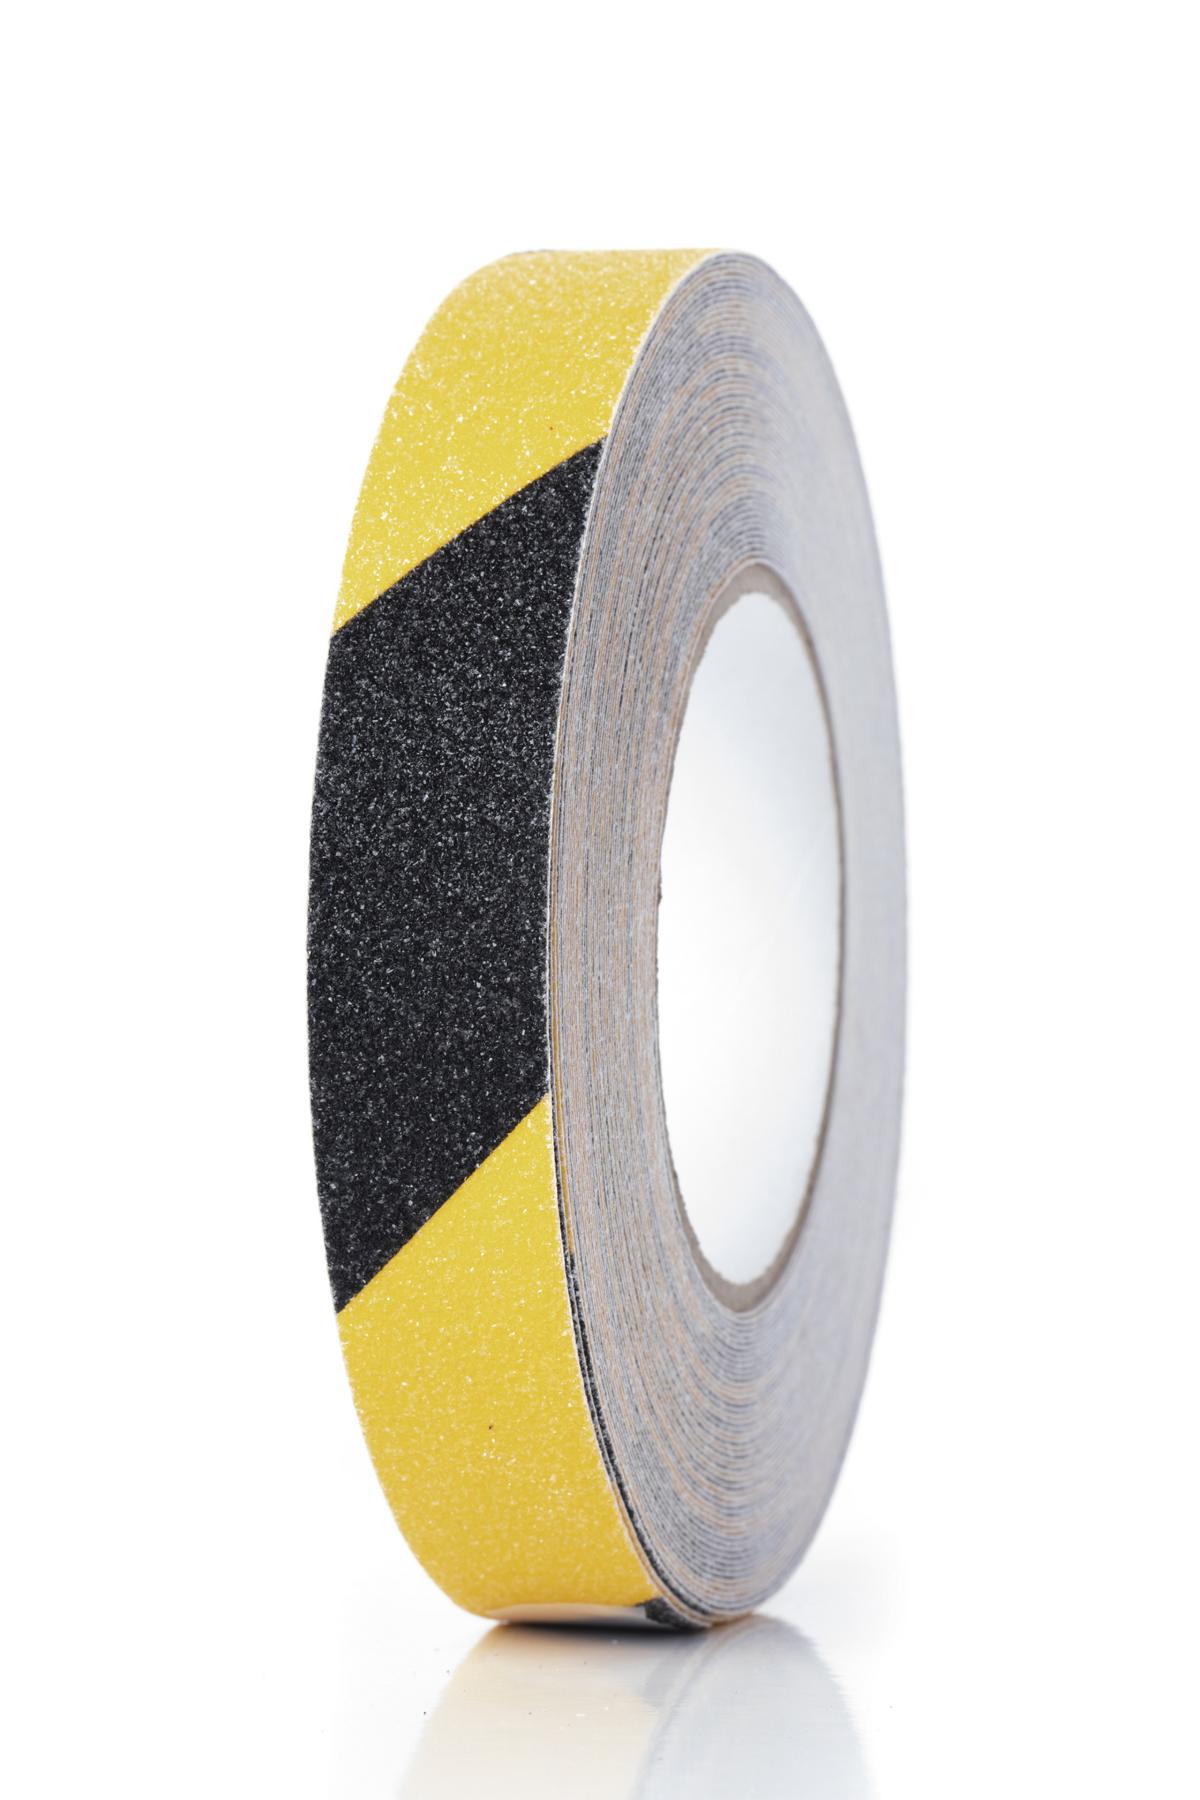 Antirutschbelag Traffic Safety Tape® - Breite 25 mm, Länge 18 m, gelb/schwarz